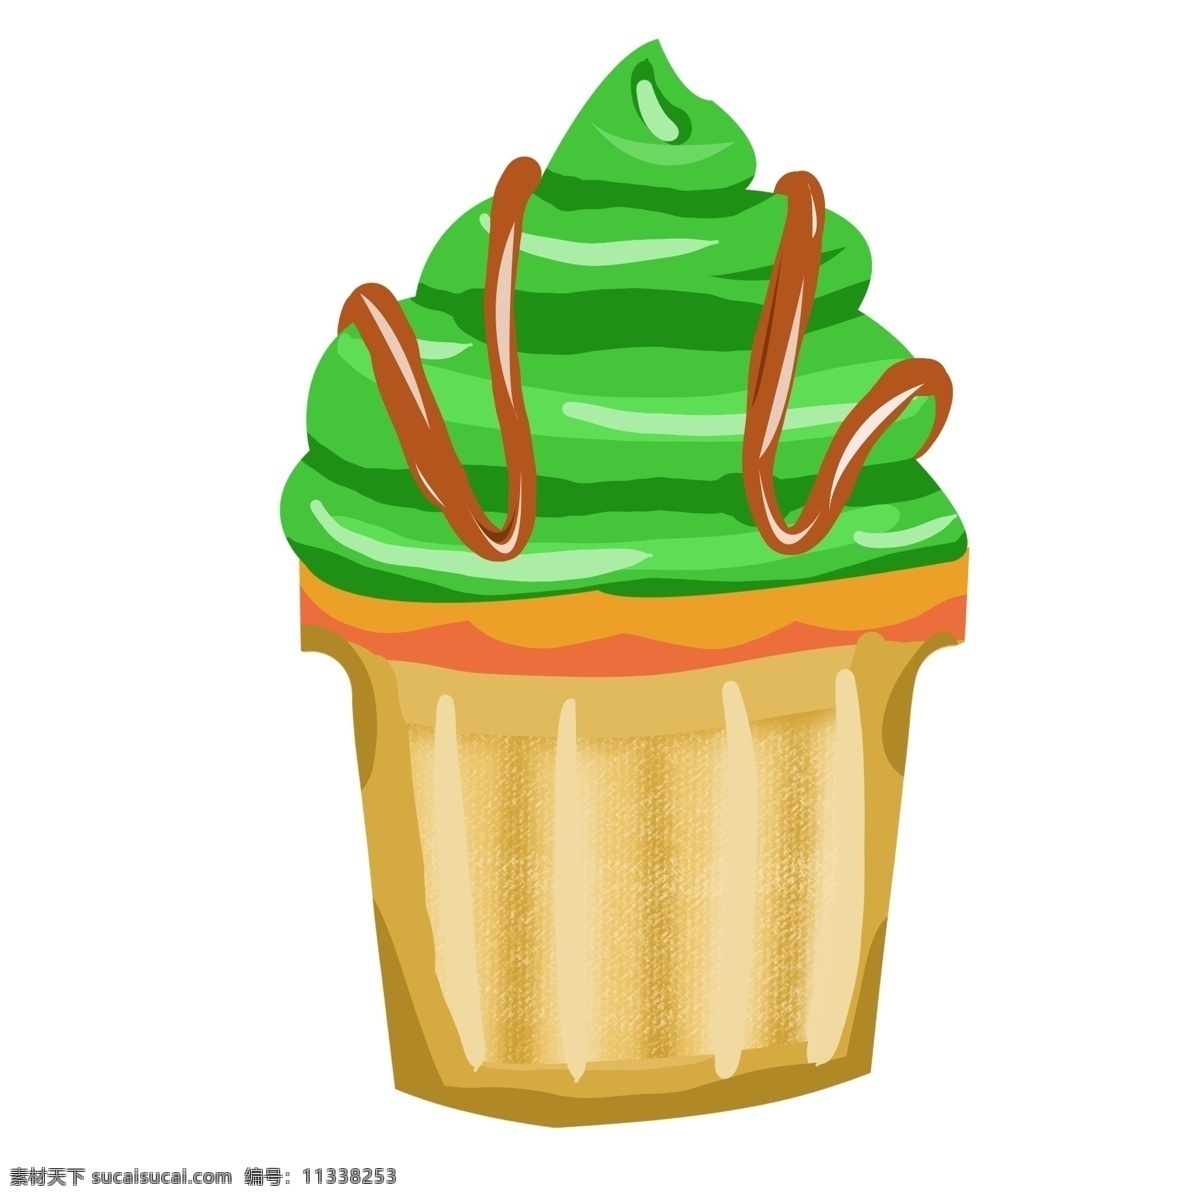 绿色甜筒 雪糕 卡通 夏日 凉爽 简洁 手绘